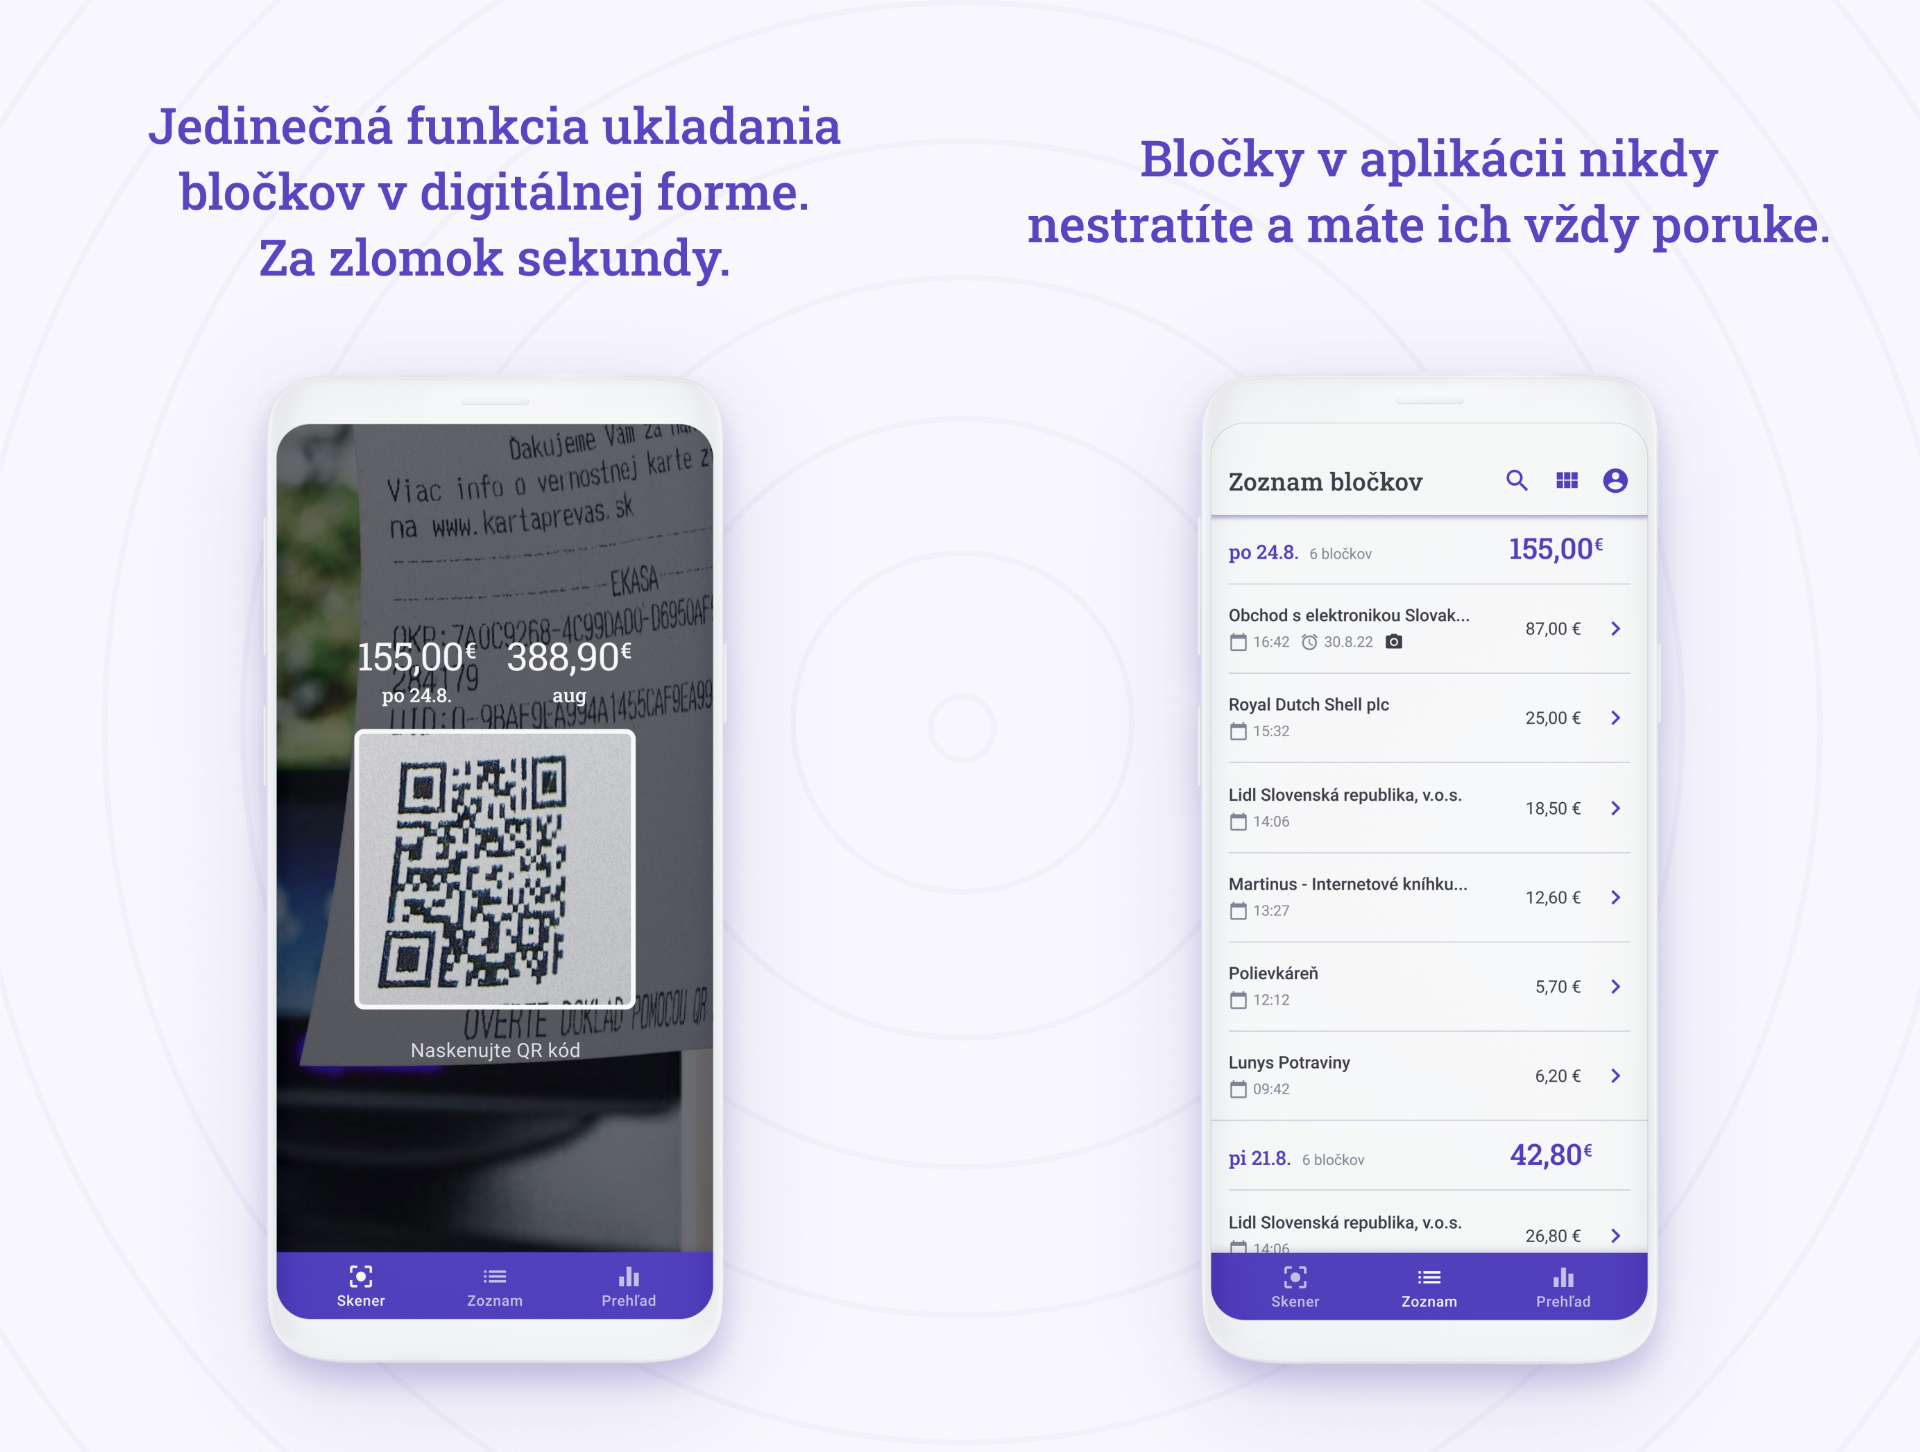 Slováci presunuli papierové bločky do mobilu